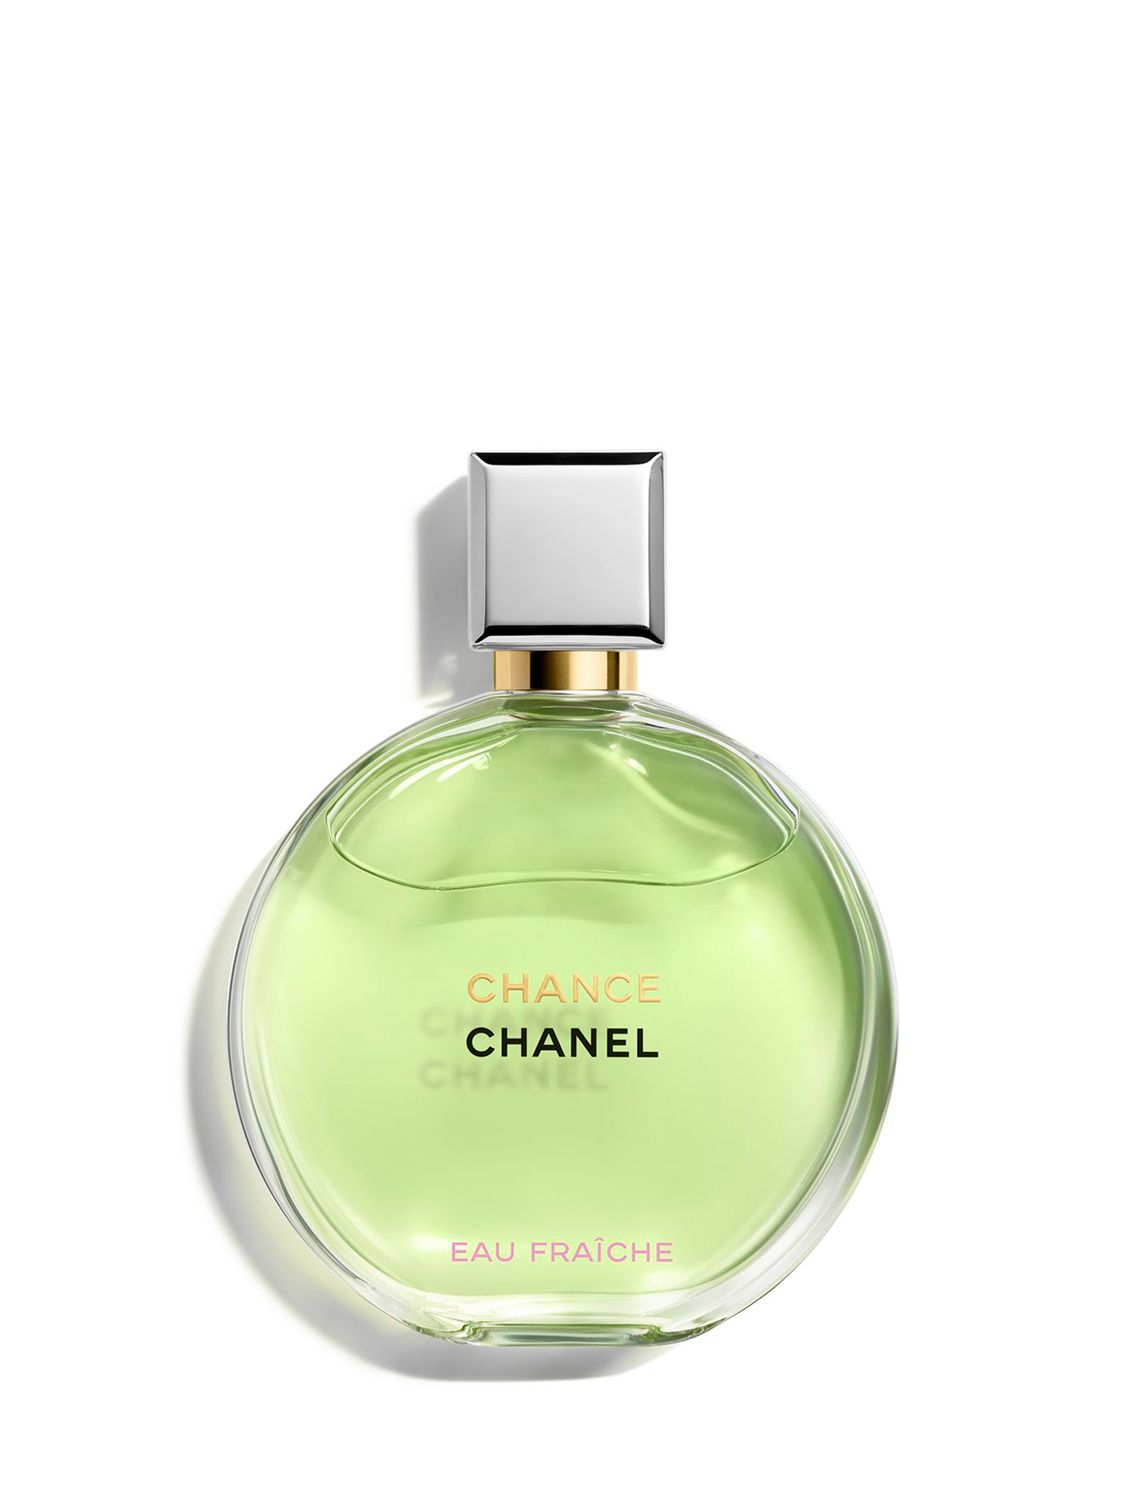 CHANEL Chance Eau Fraîche Eau de Parfum Spray, 50ml 1